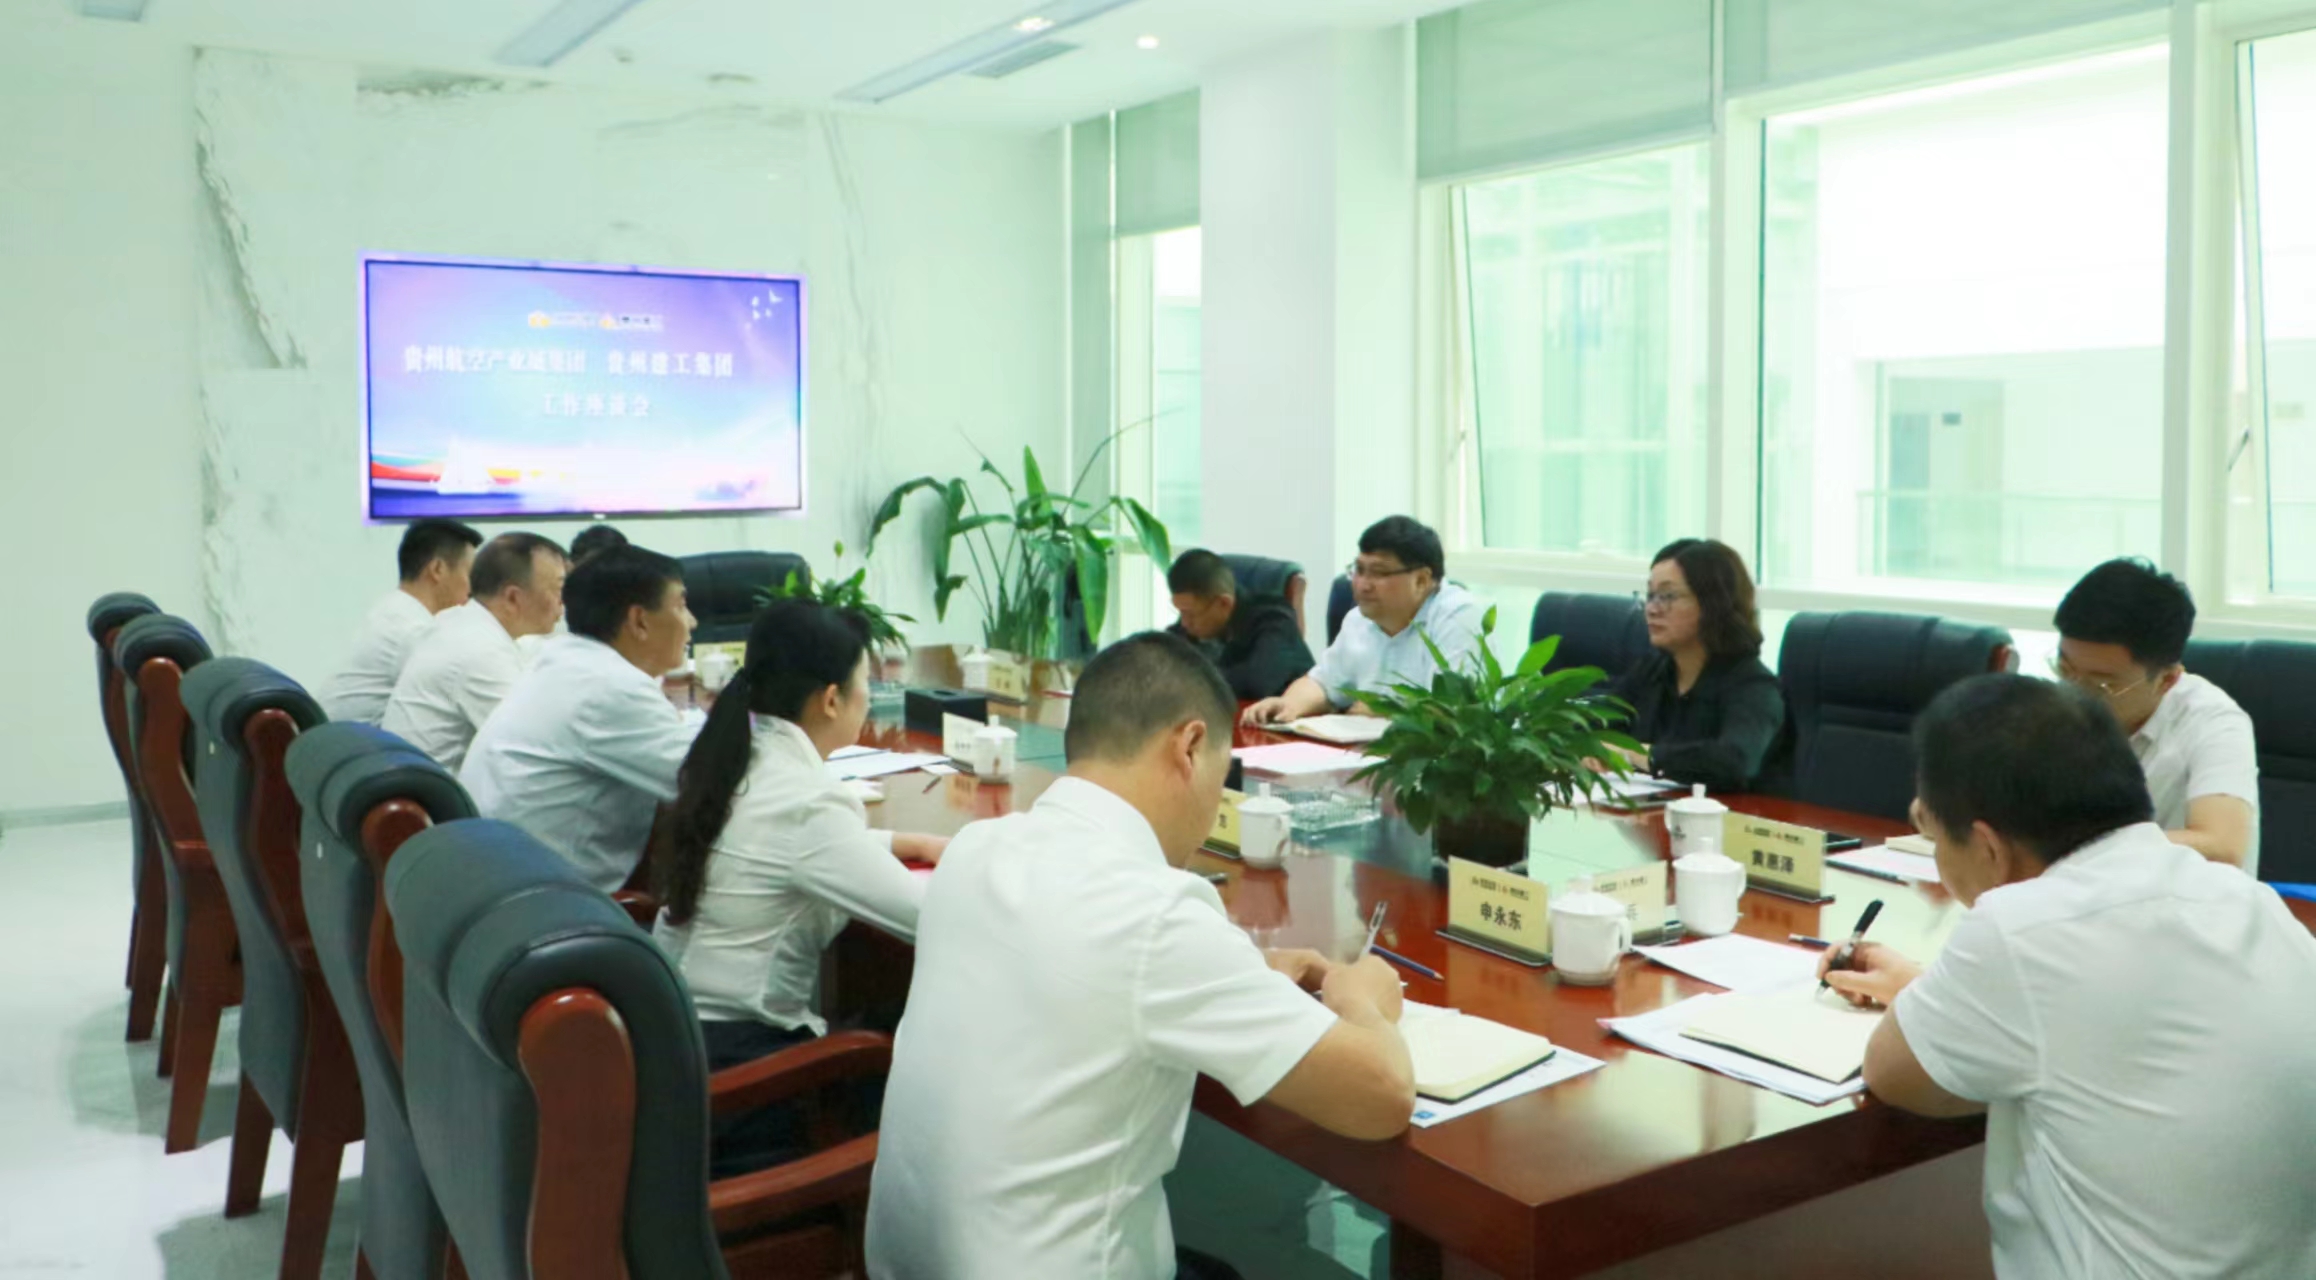  贵州建工集团与贵州航空产业城集团举行工作座谈会